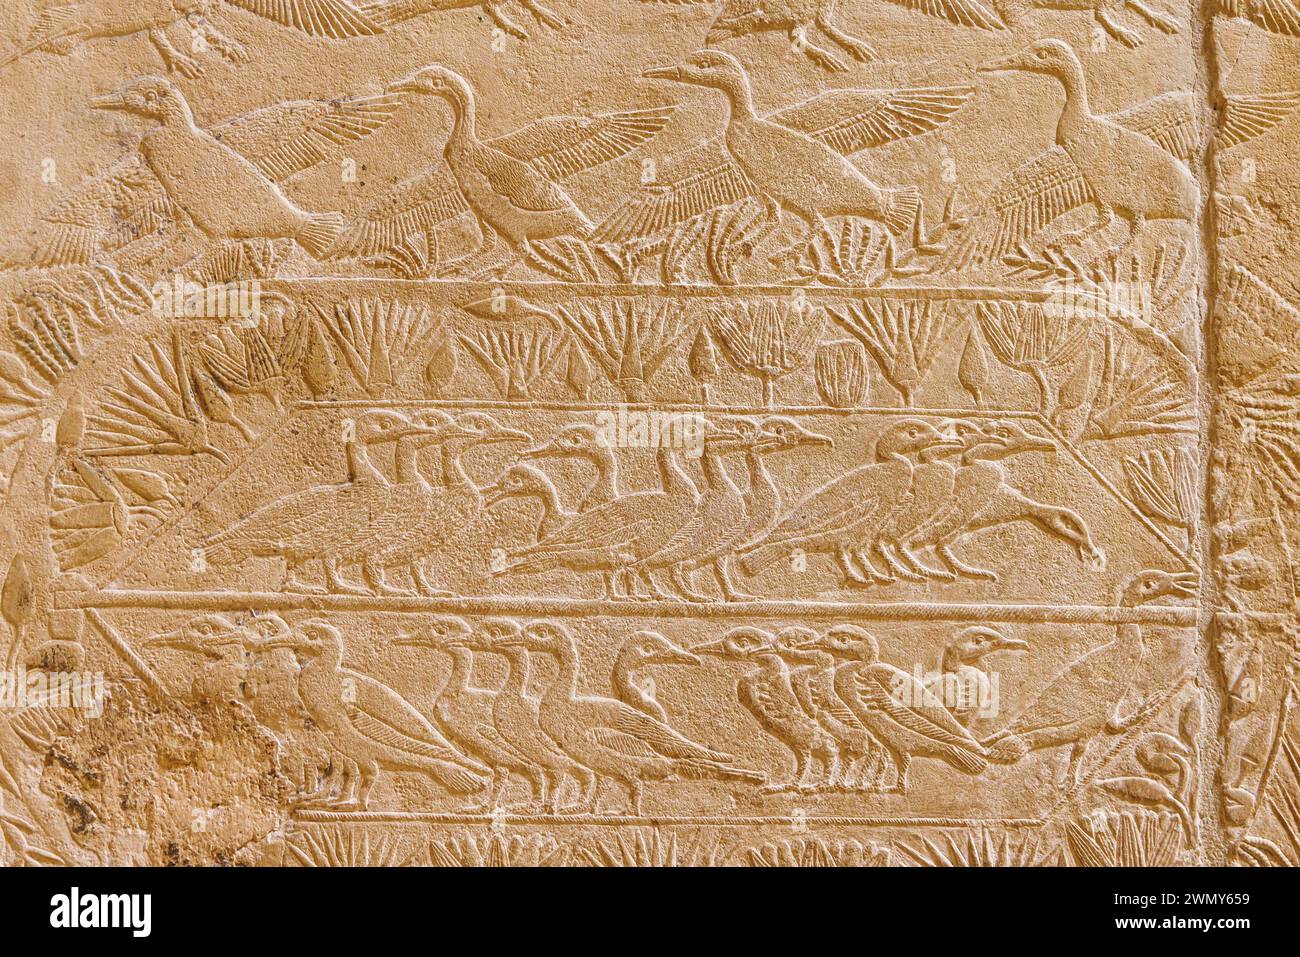 Ägypten, Kairo, Sakkara, Memphis und seine Nekropole, die Pyramidenfelder von Gizeh bis Dahshur, die von der UNESCO zum Weltkulturerbe erklärt wurden, Kagemni-Grab, Enten Stockfoto